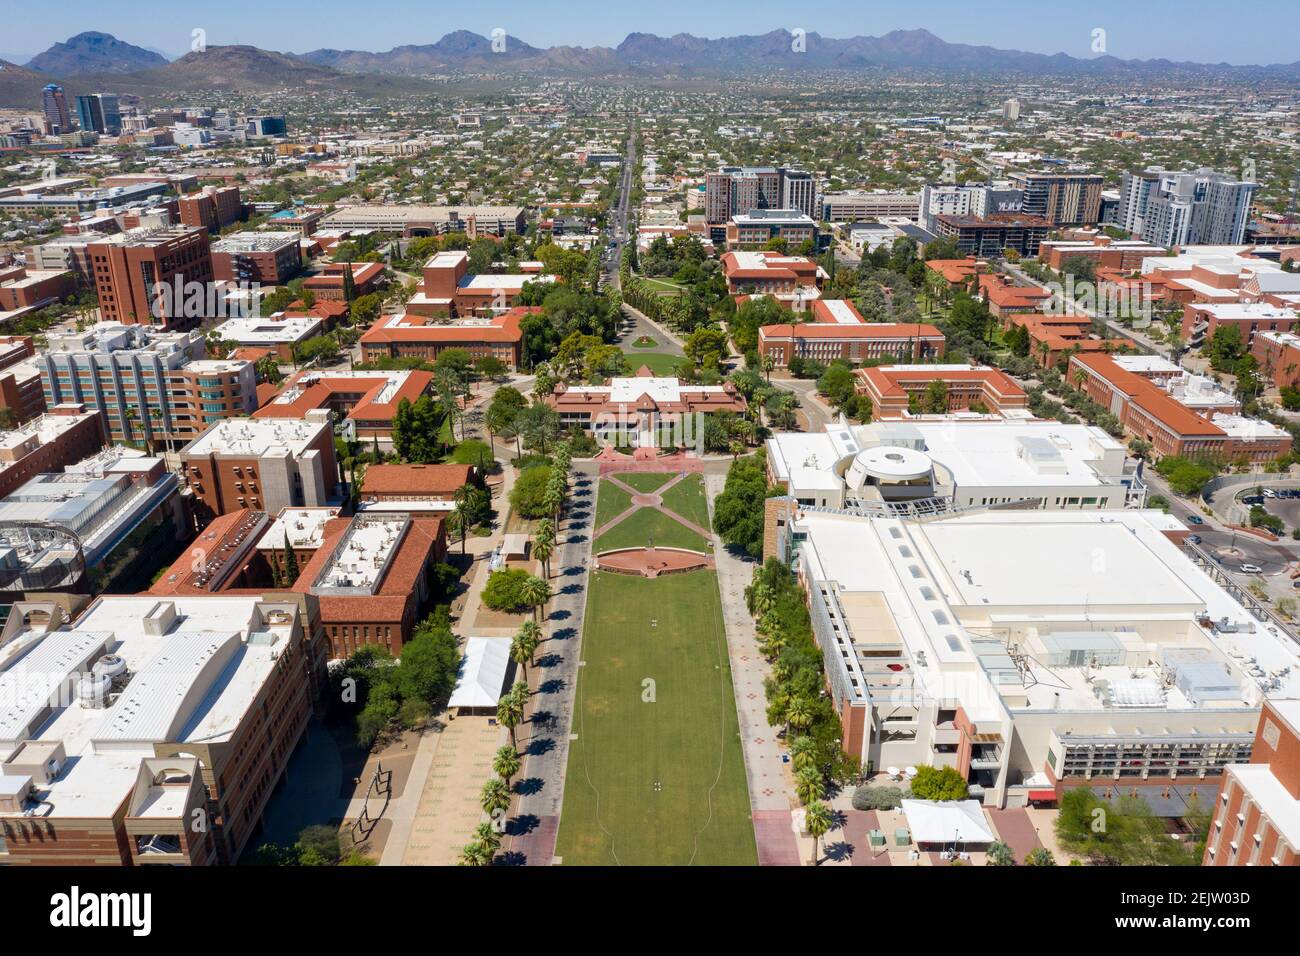 Old Main, University of Arizona, Tucson, AZ, USA Stock Photo - Alamy